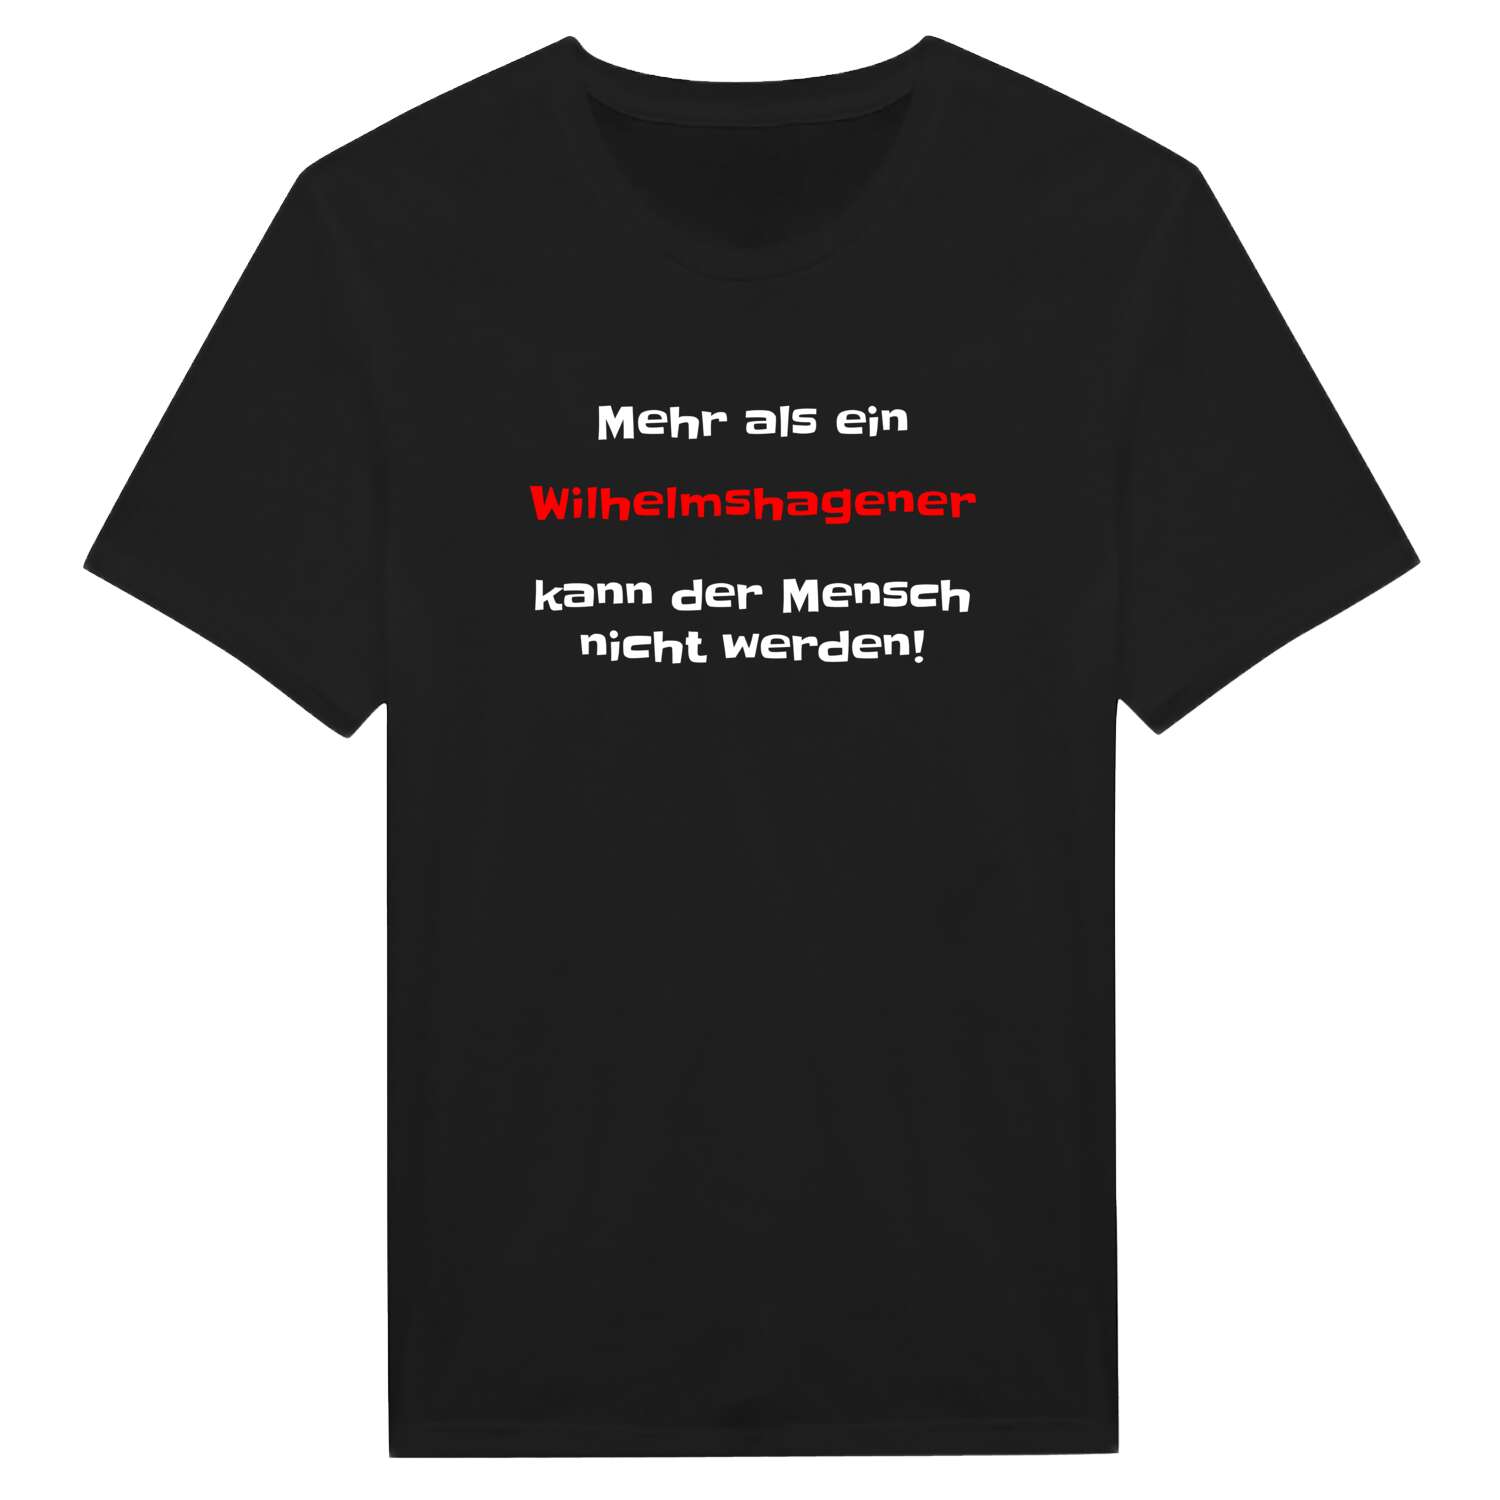 Wilhelmshagen T-Shirt »Mehr als ein«